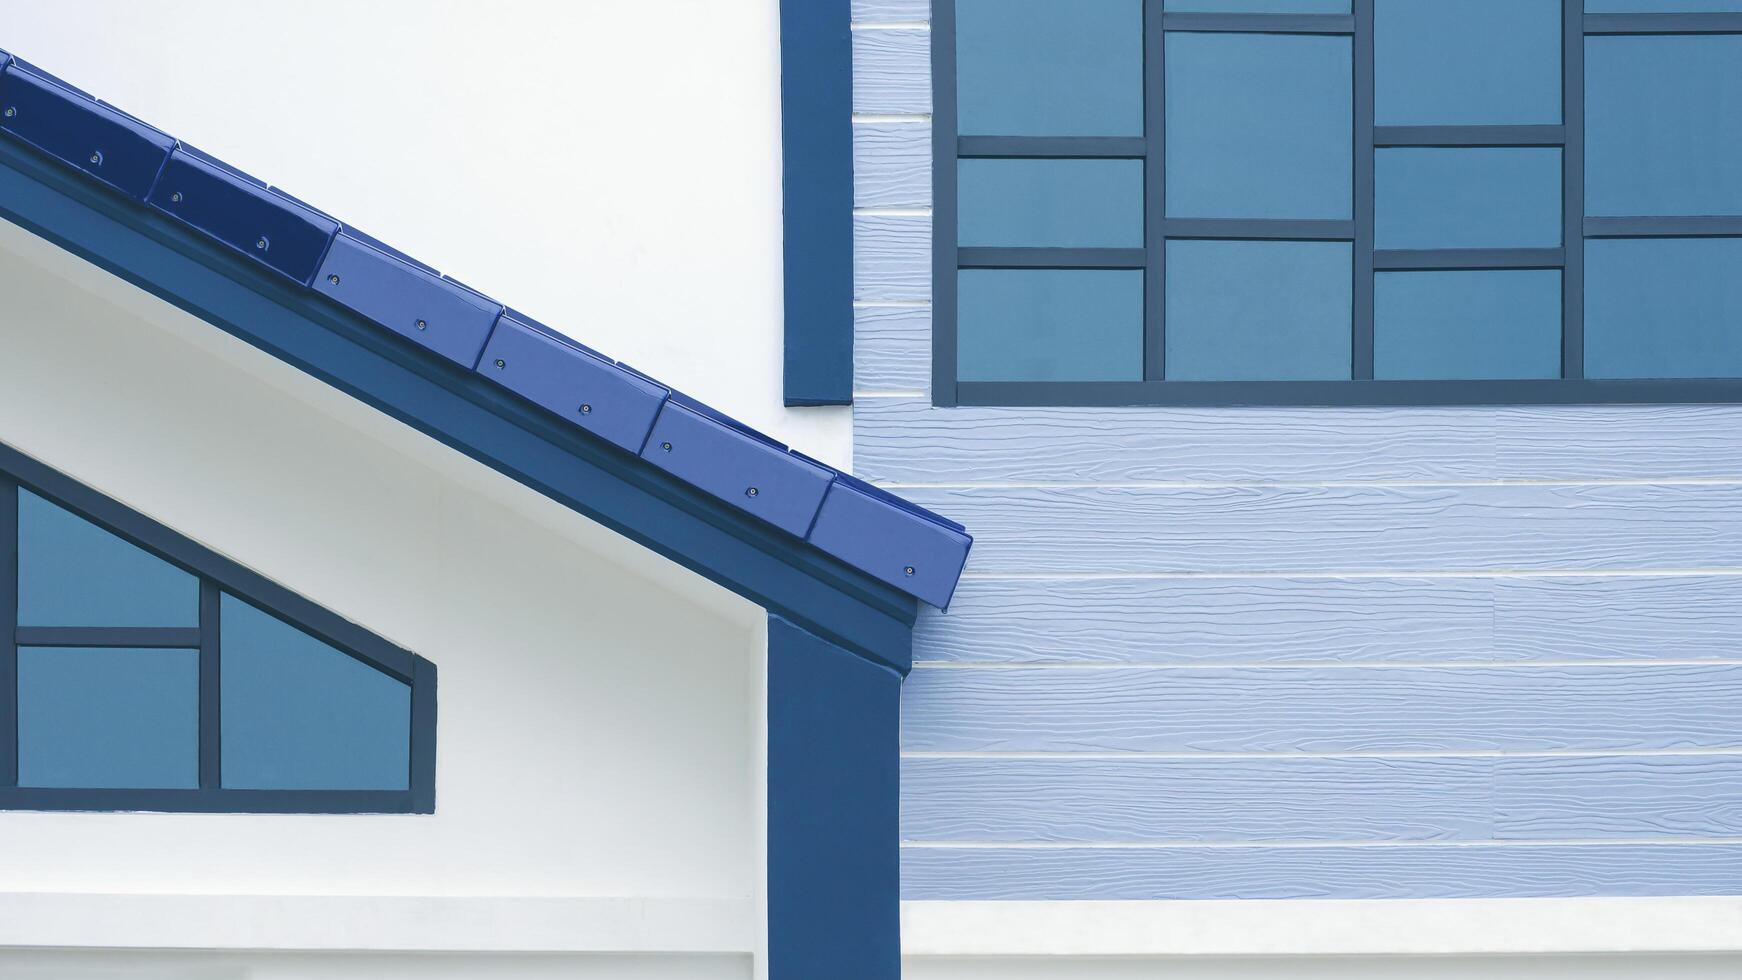 ljus reflexion på glas vinden fönster yta med del av markis bricka tak utanför av modern vit och blå hus byggnad foto